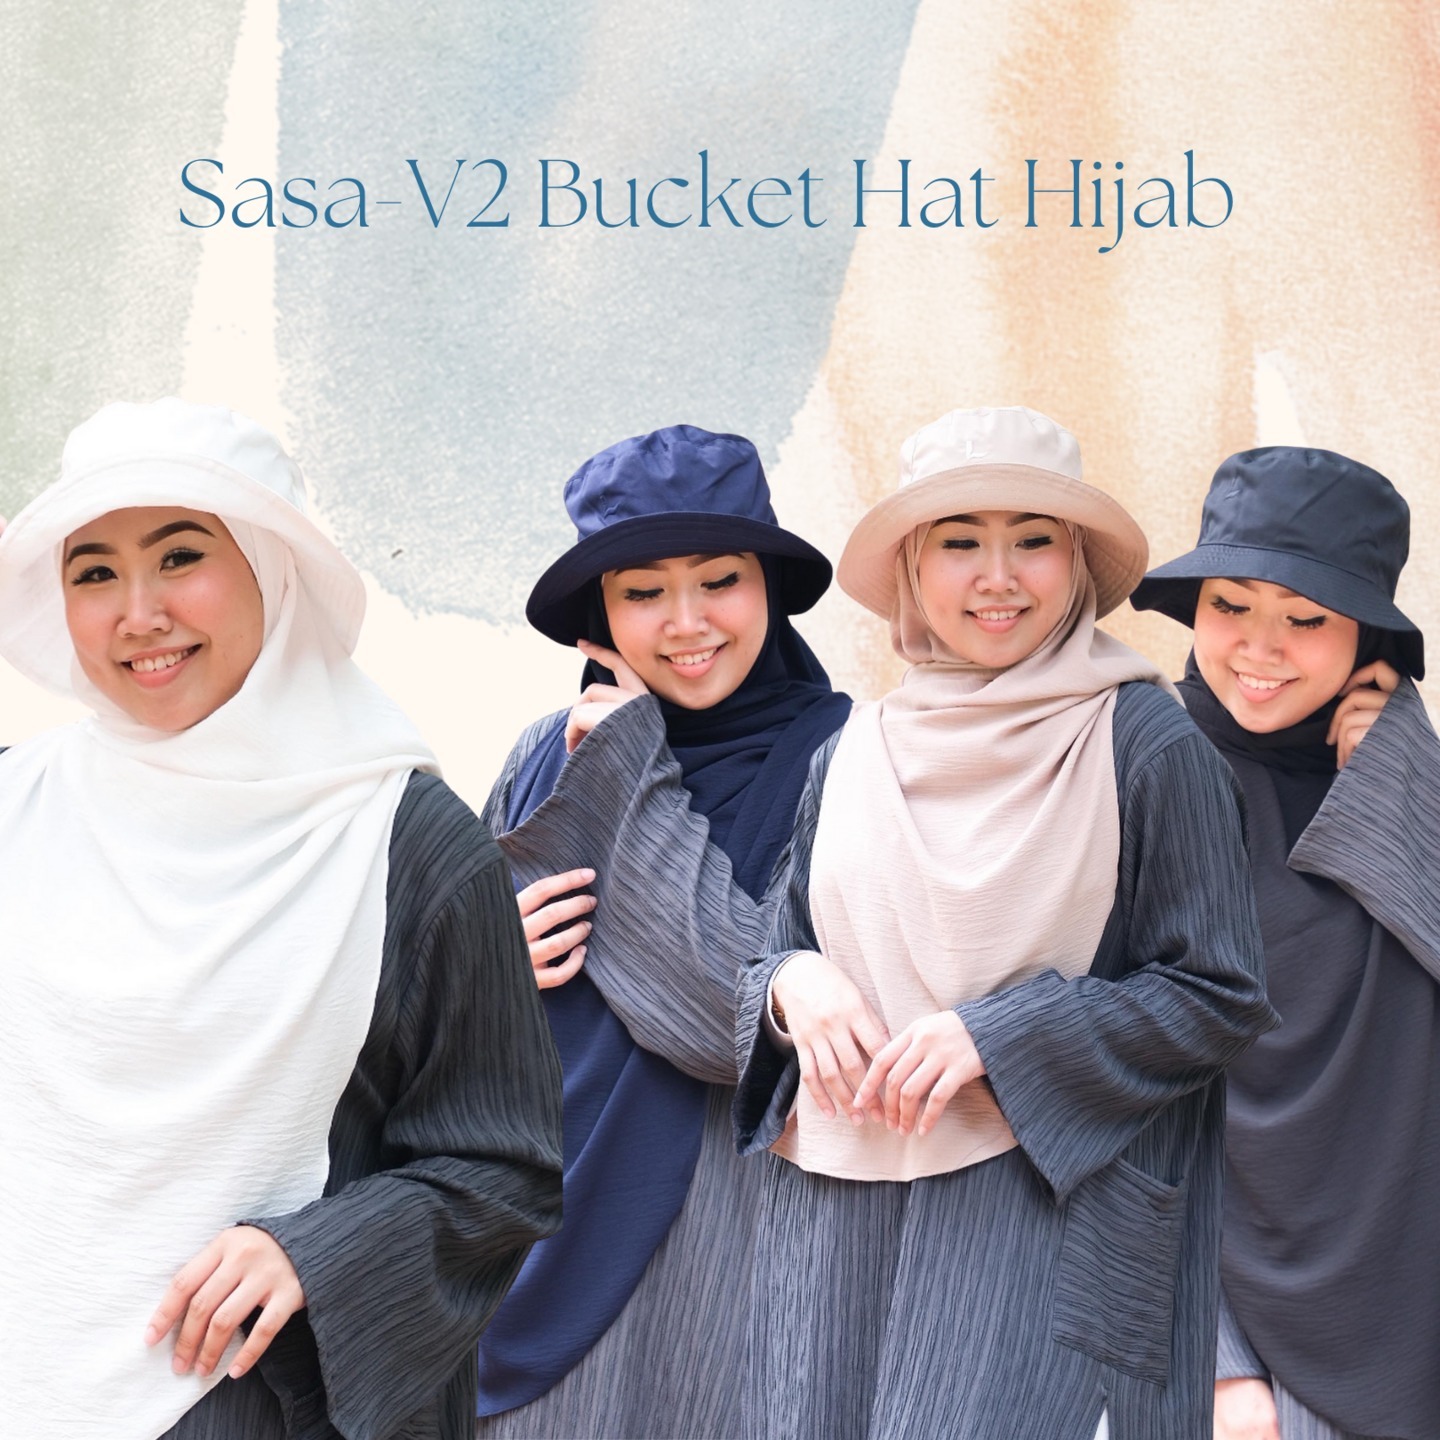 Sasa-V2 Bucket Hat Shawl